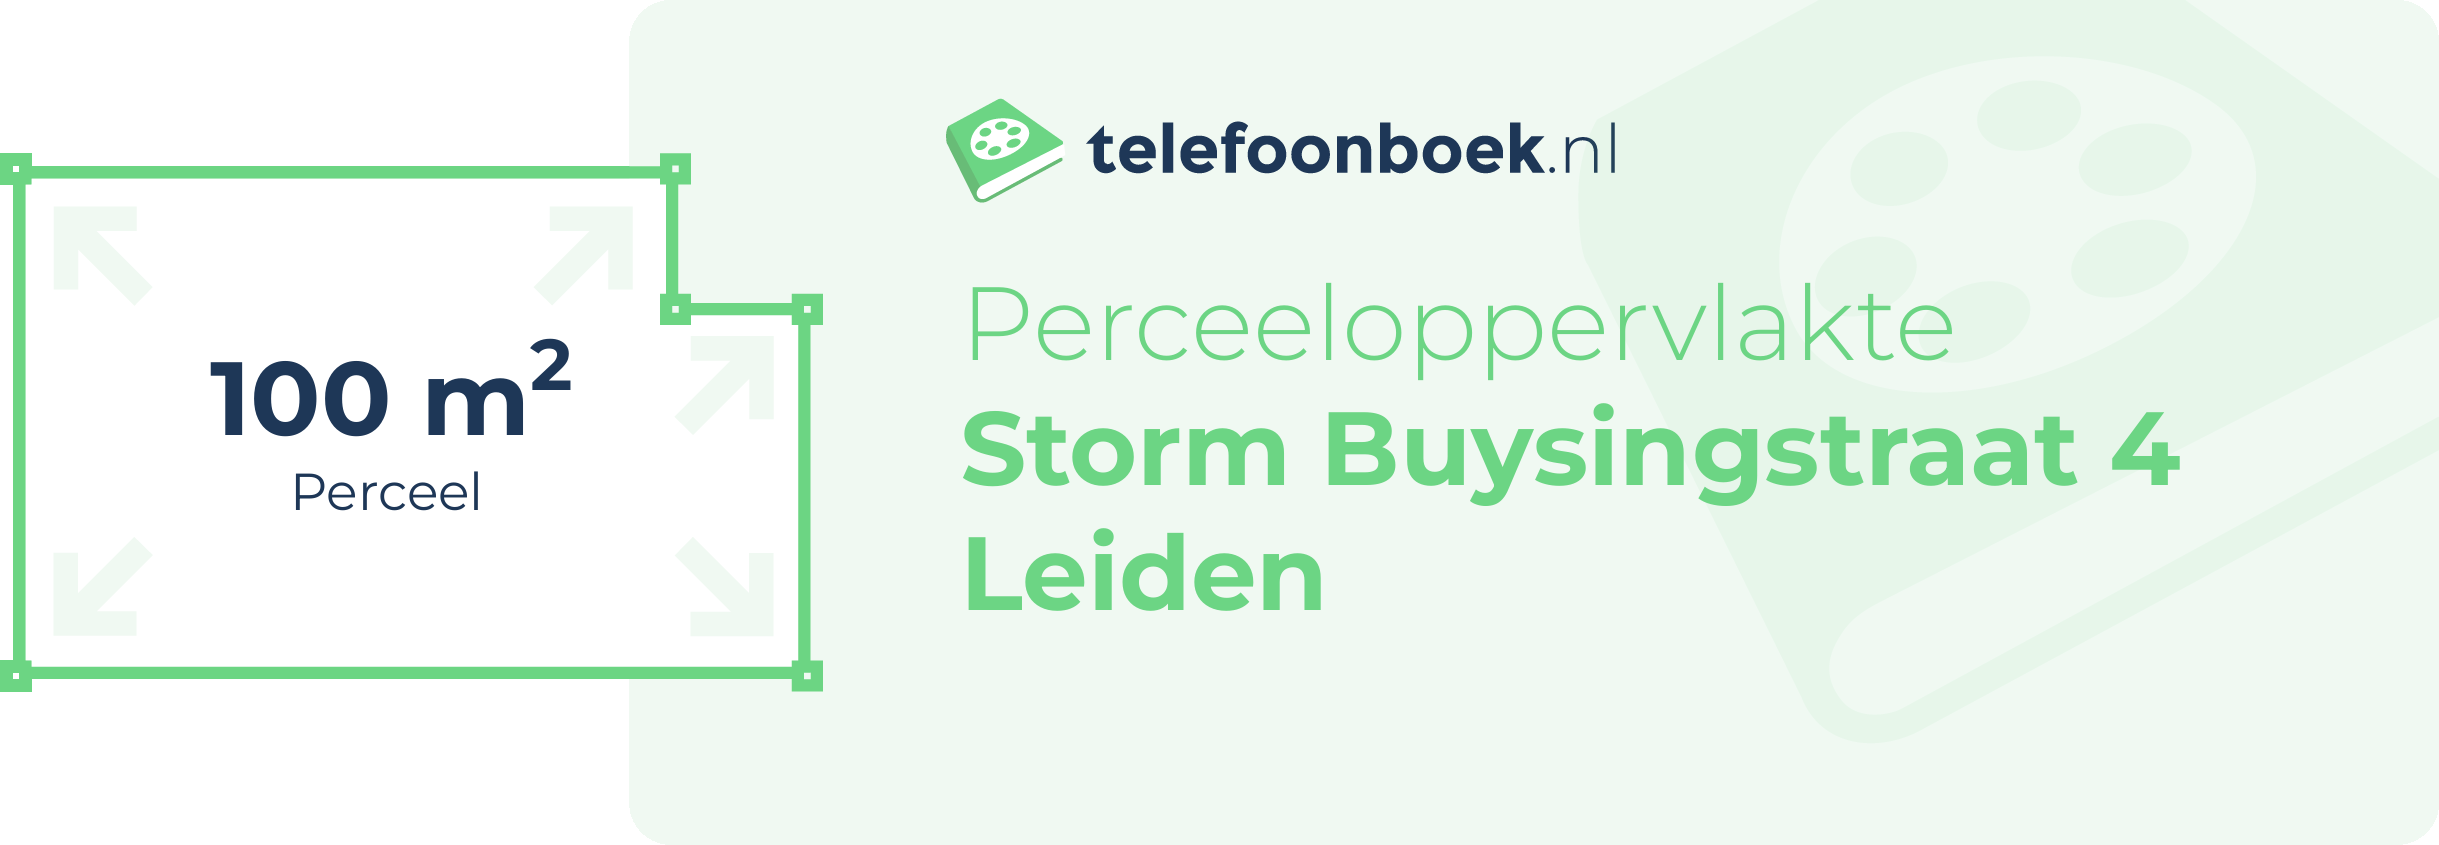 Perceeloppervlakte Storm Buysingstraat 4 Leiden